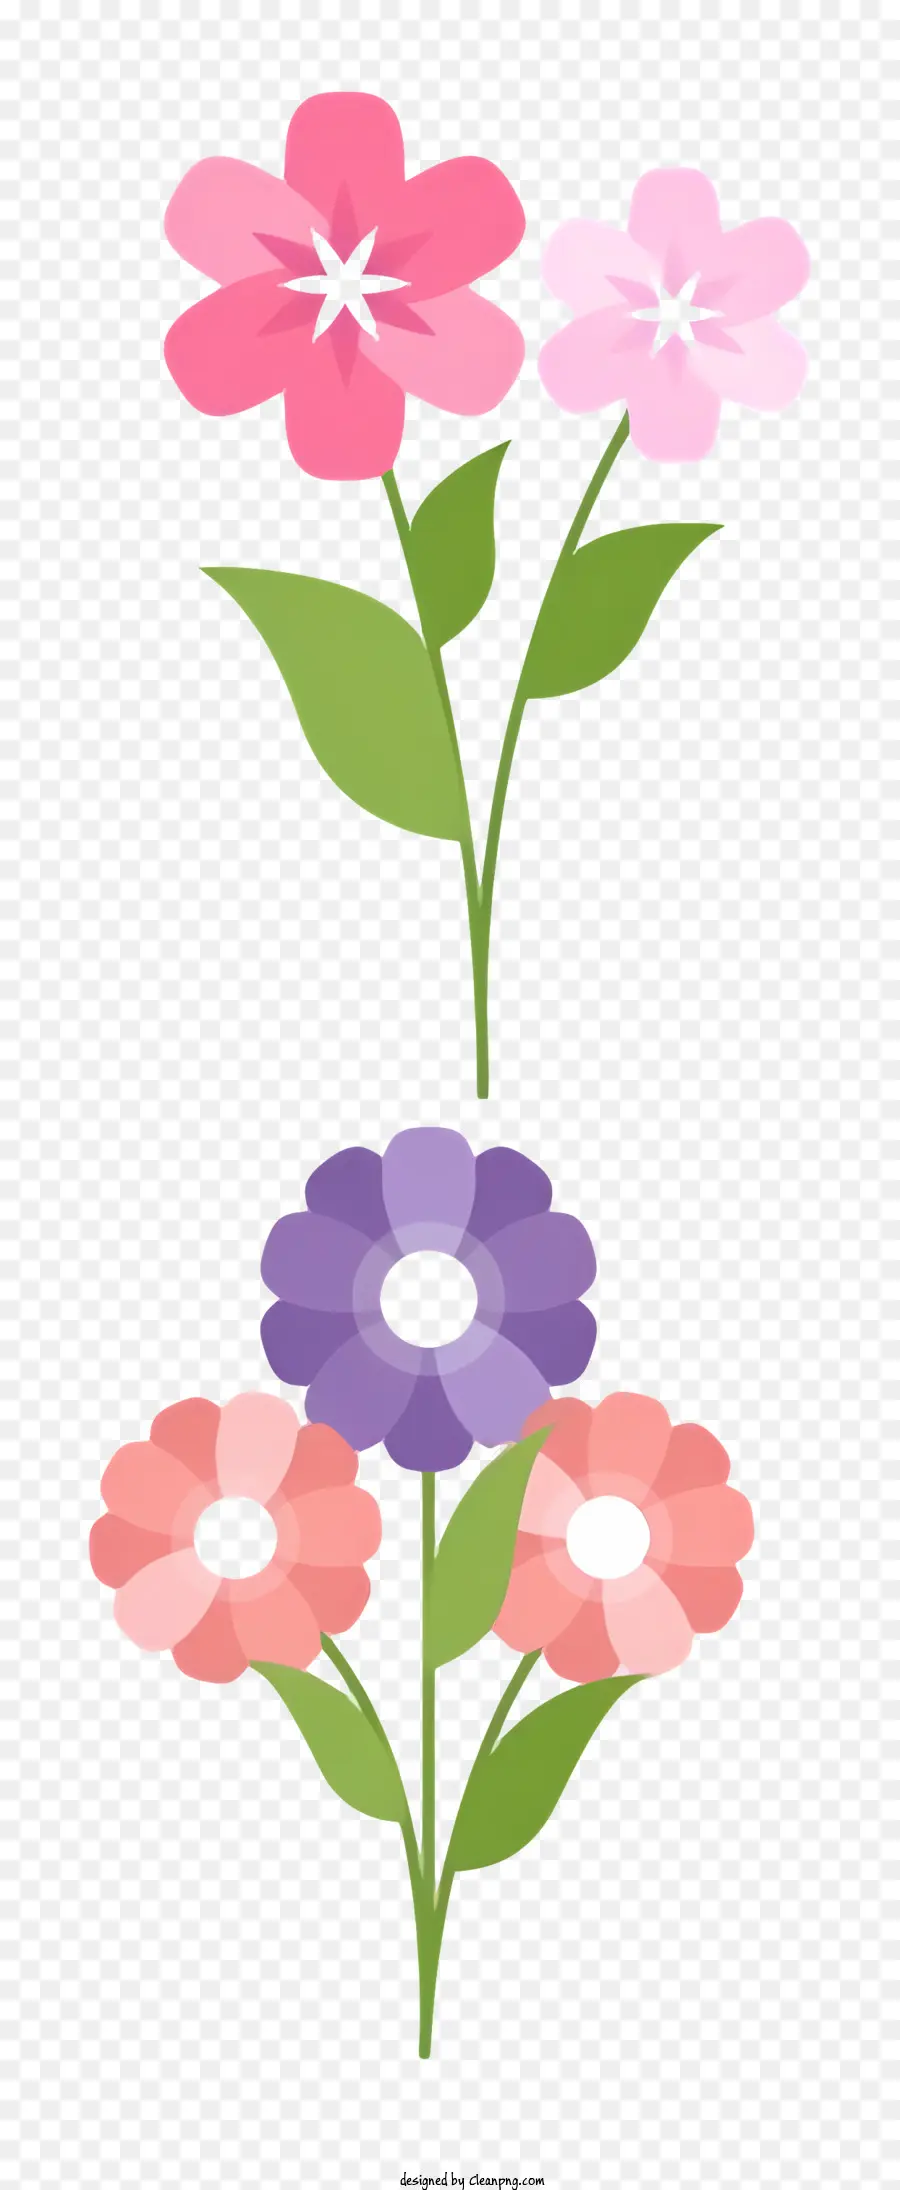 disegno floreale - Fiore in stile piatto con petali rosa e viola